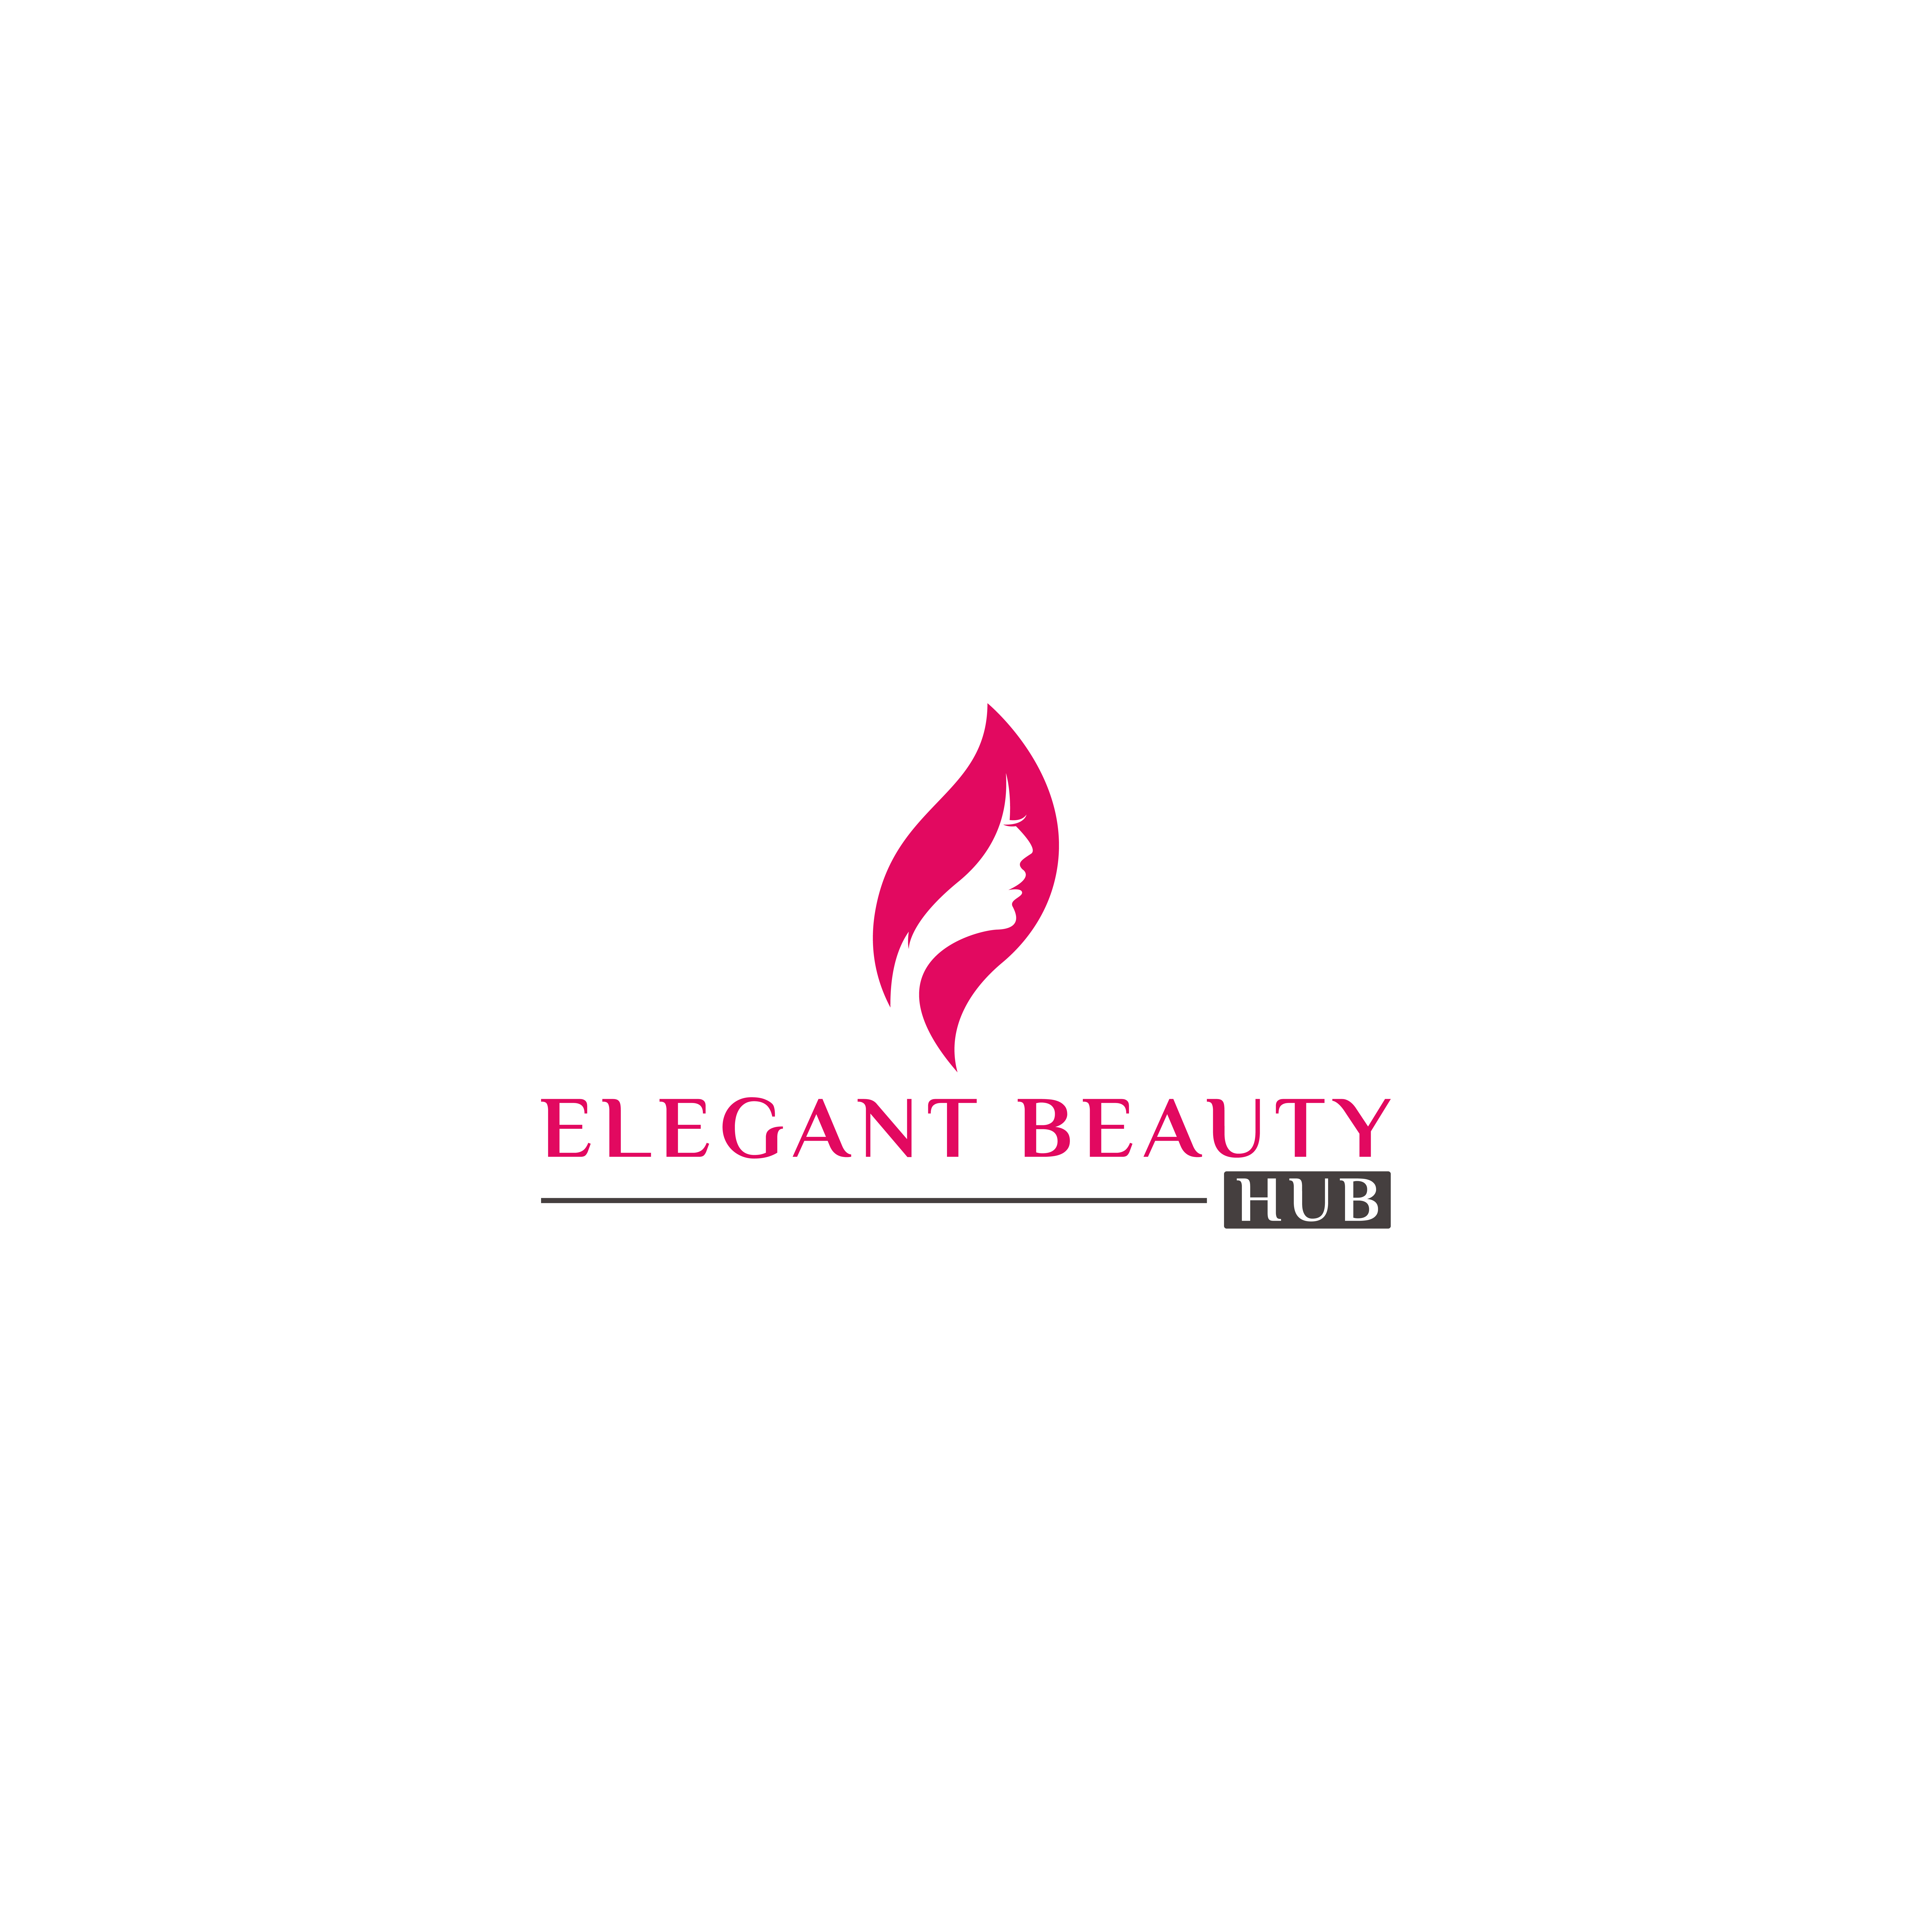 Elegant Beauty Hub